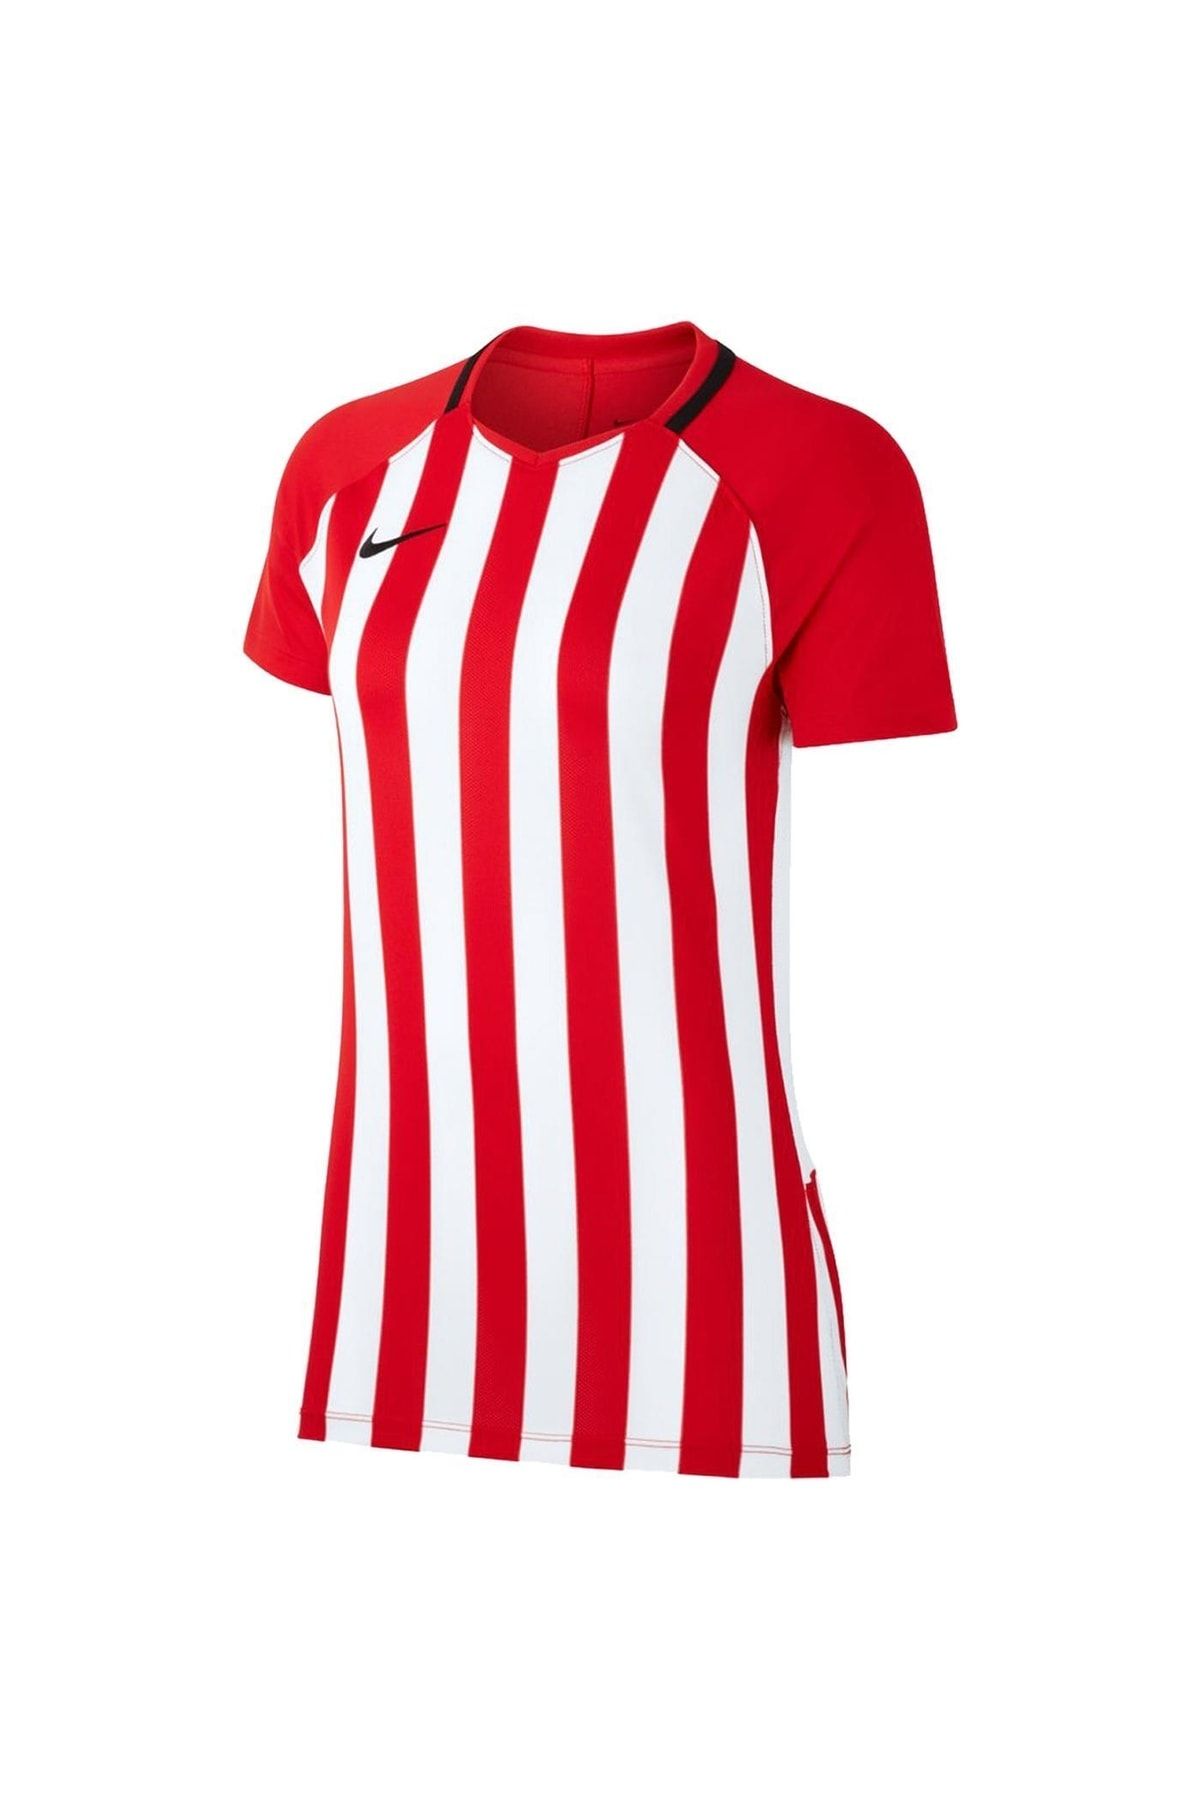 Nike Dri-fit Division Iıı Kadın Kırmızı Futbol Forma Cn6888-657